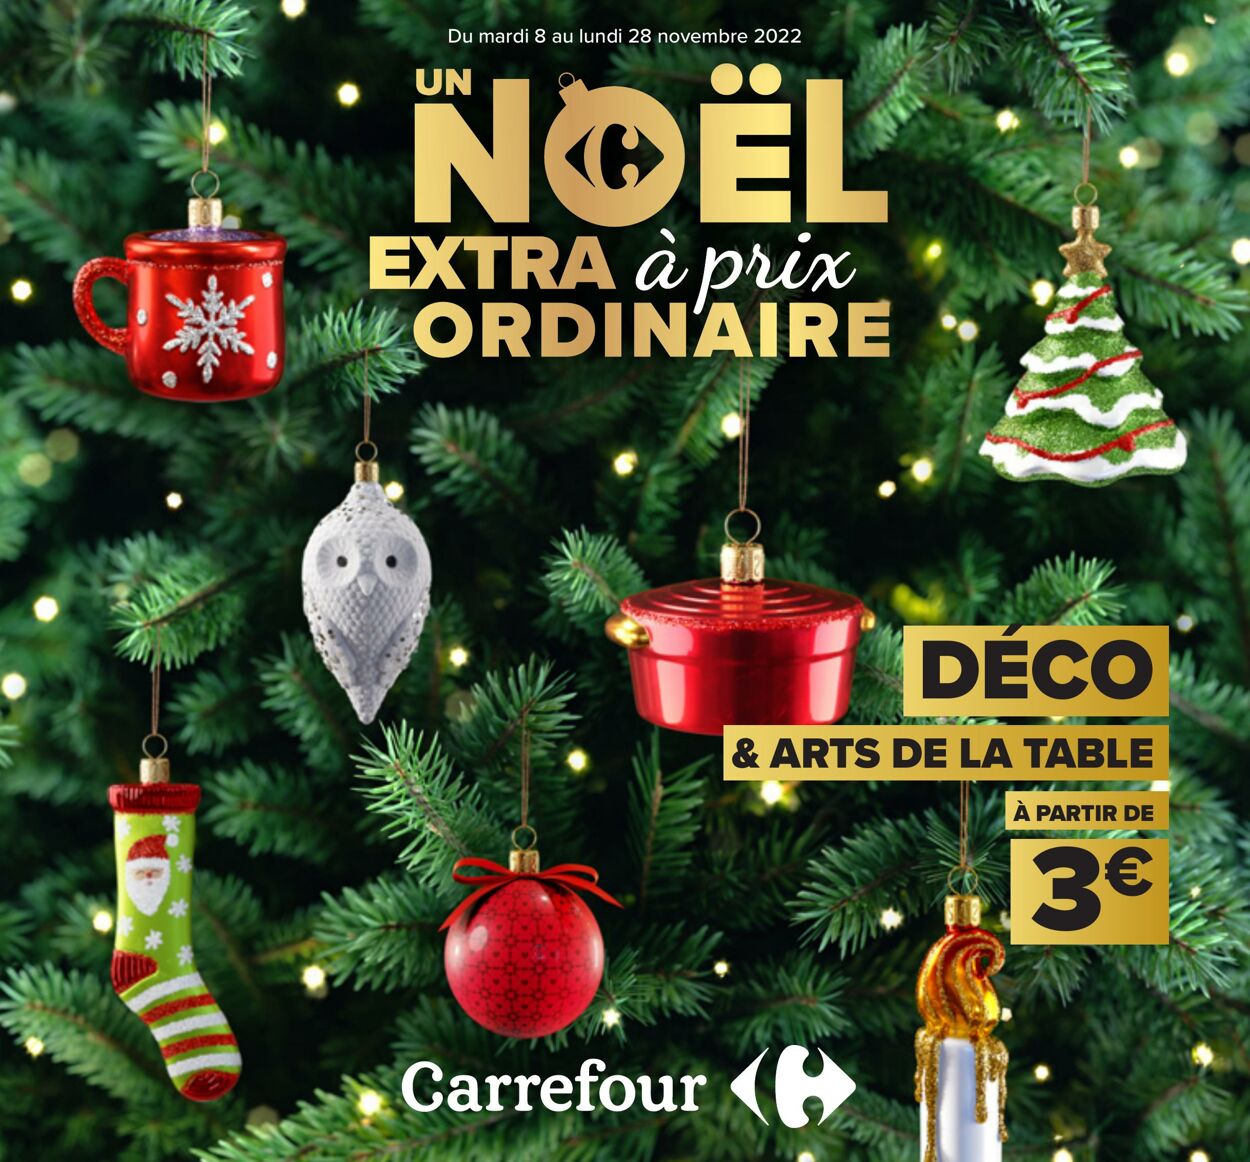 Catalogue Carrefour 08.11.2022 - 28.11.2022